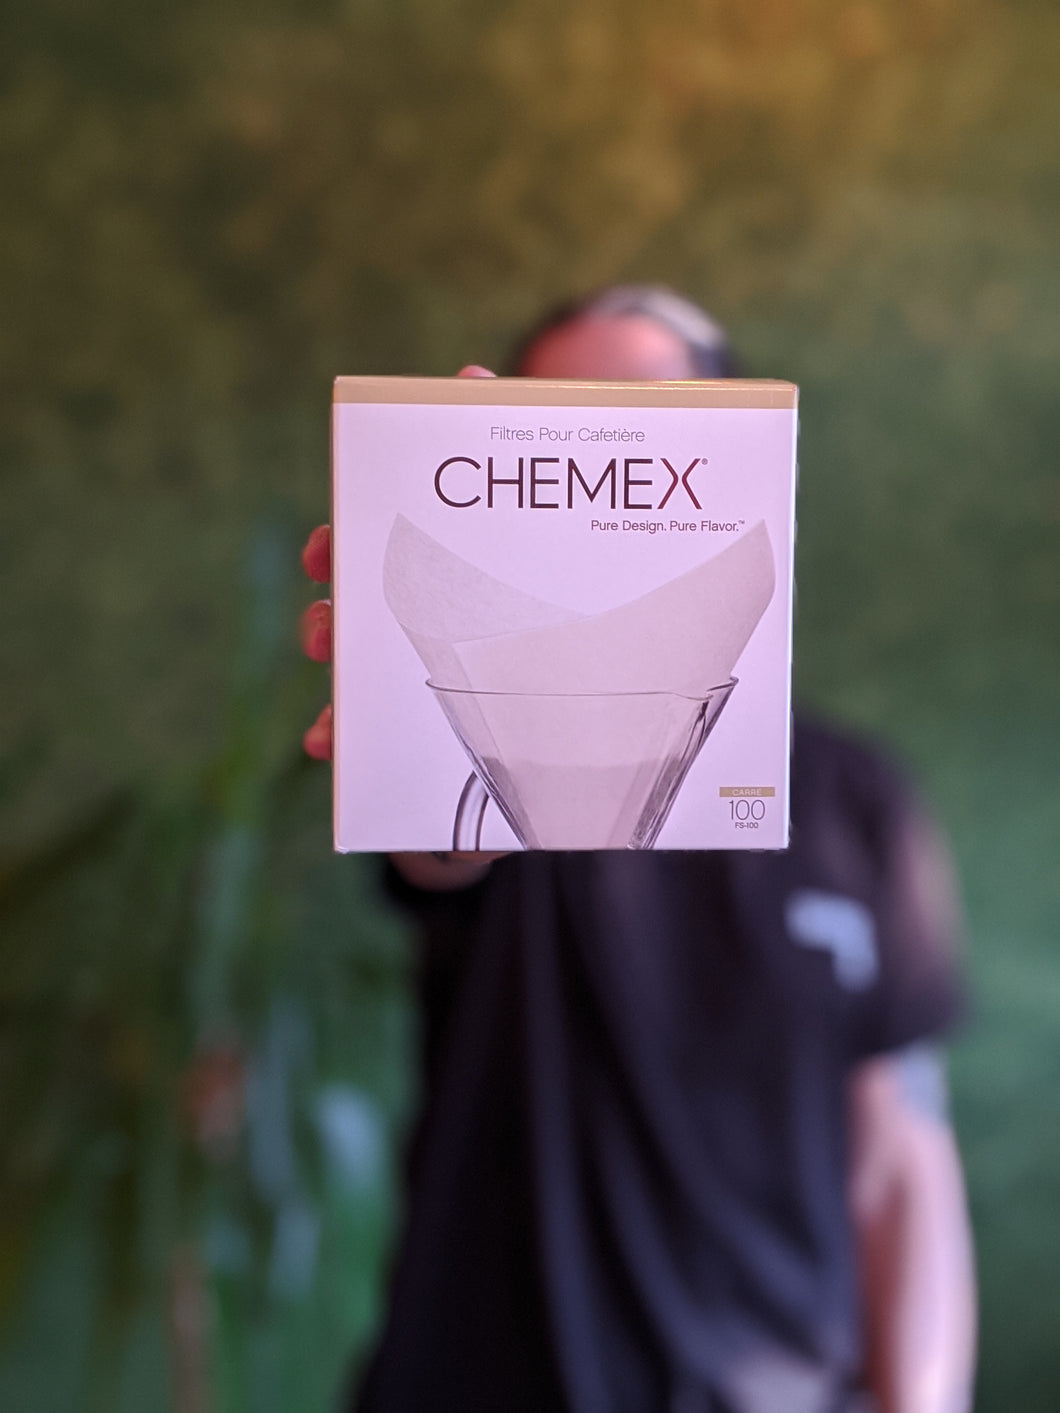 CHEMEX filters 100 pcs